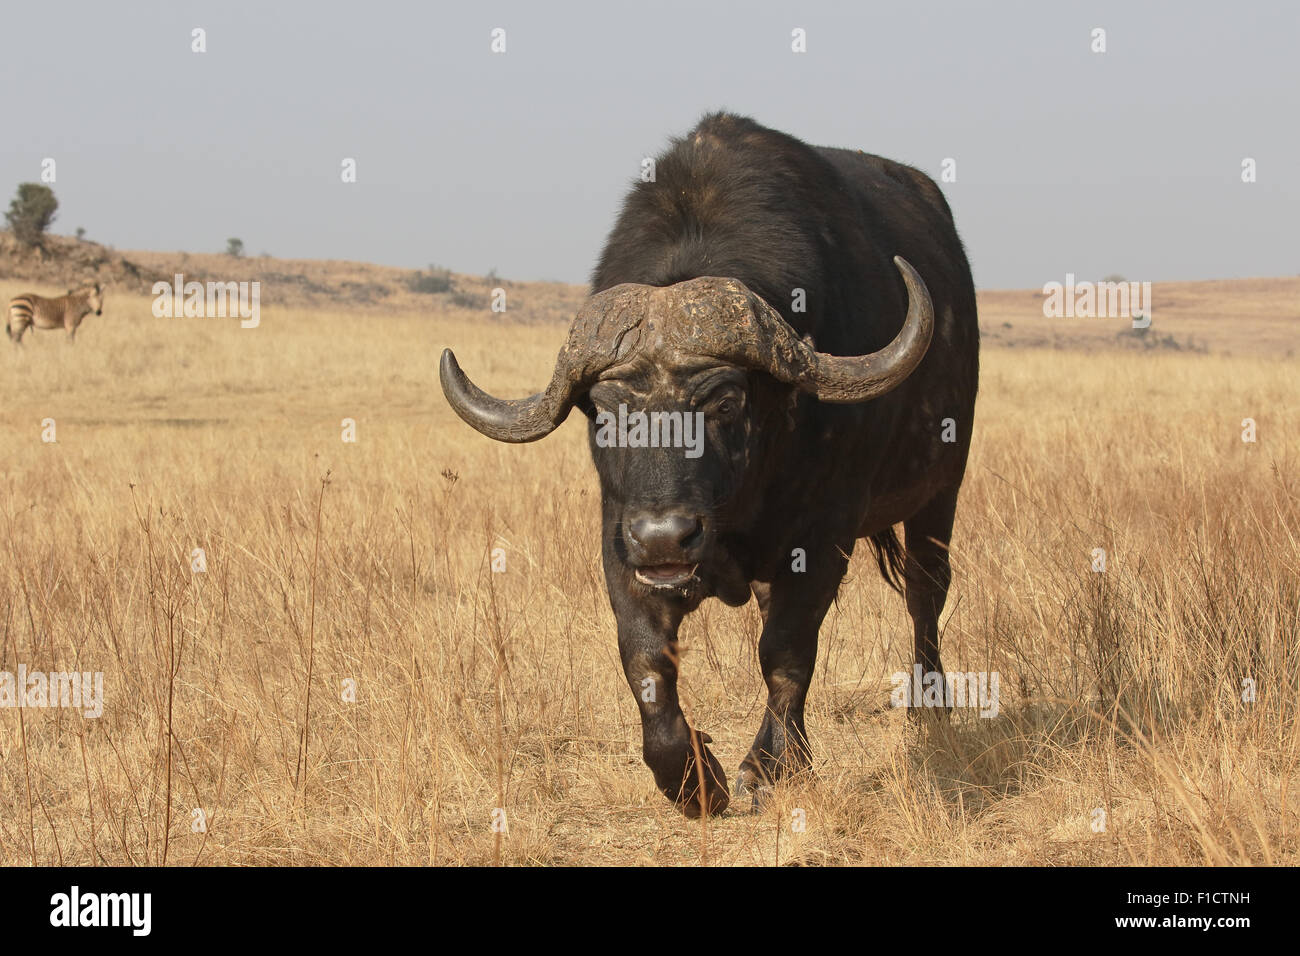 El búfalo africano, Syncerus caffer, único mamífero sobre el césped, Sudáfrica, agosto de 2015 Foto de stock